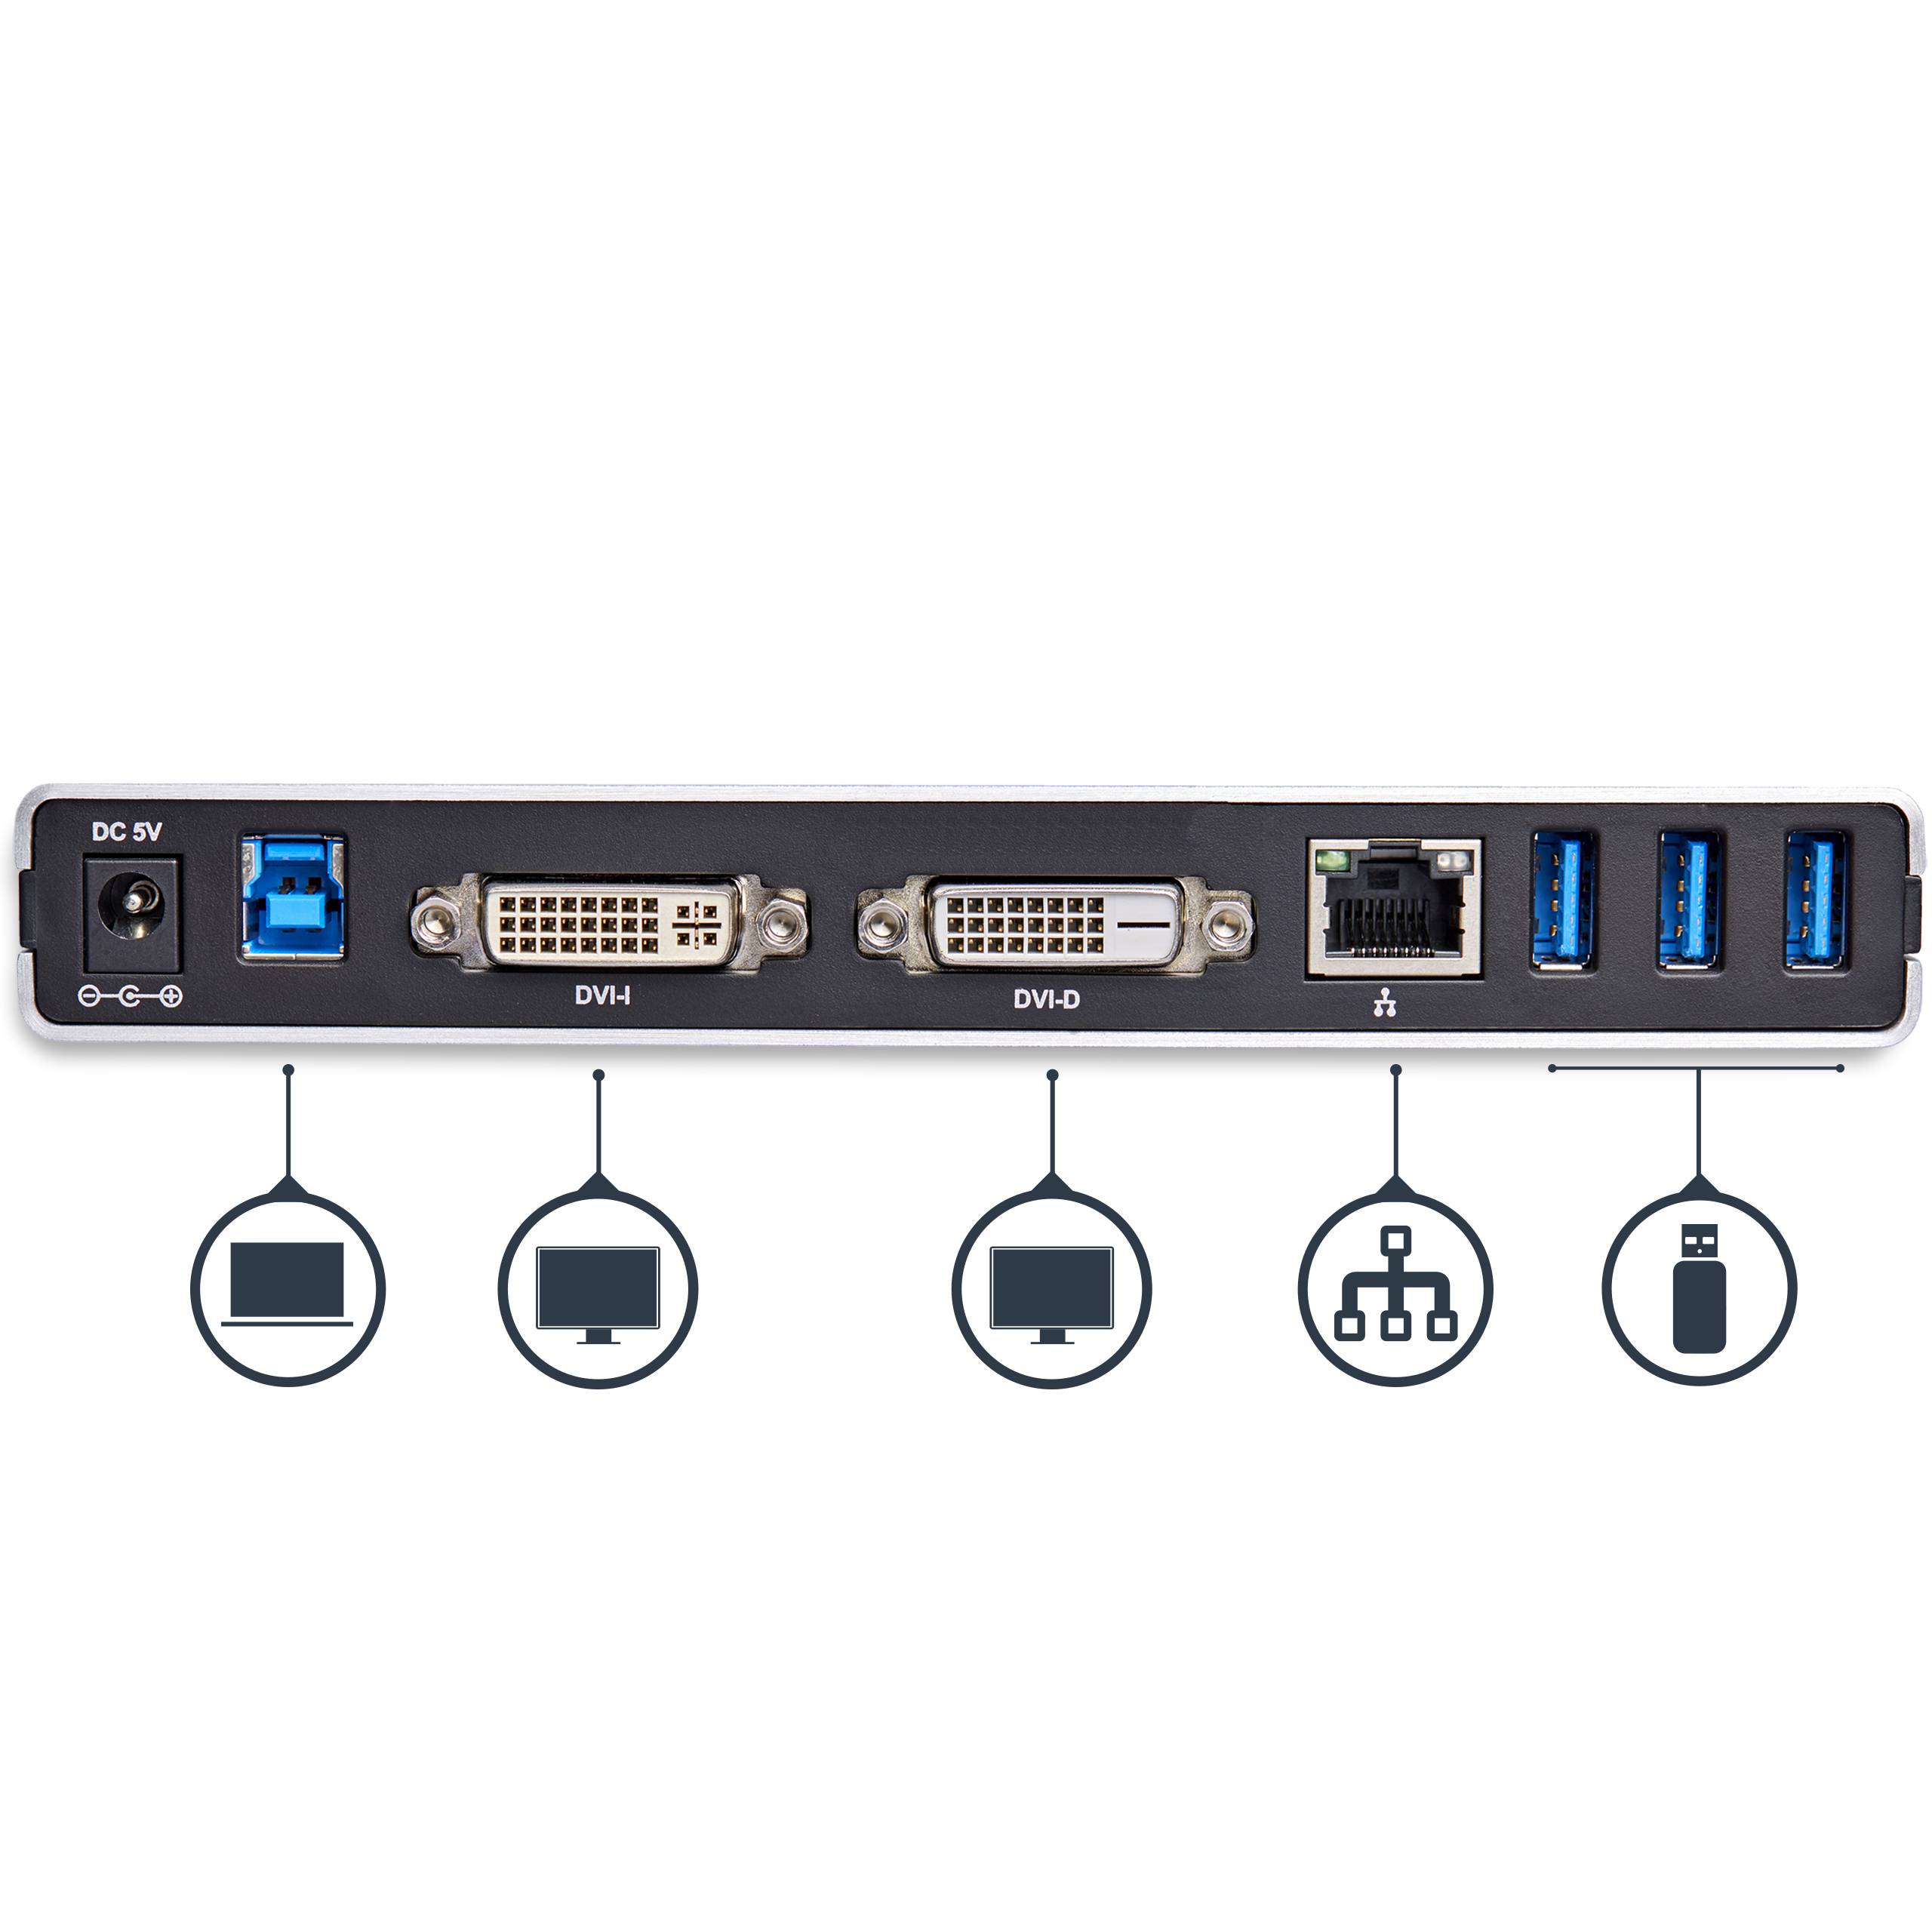 Rca Informatique - image du produit : STATION DACCUEIL USB 3.0 PC PORTABLE 2 X DVI / USB / GBE